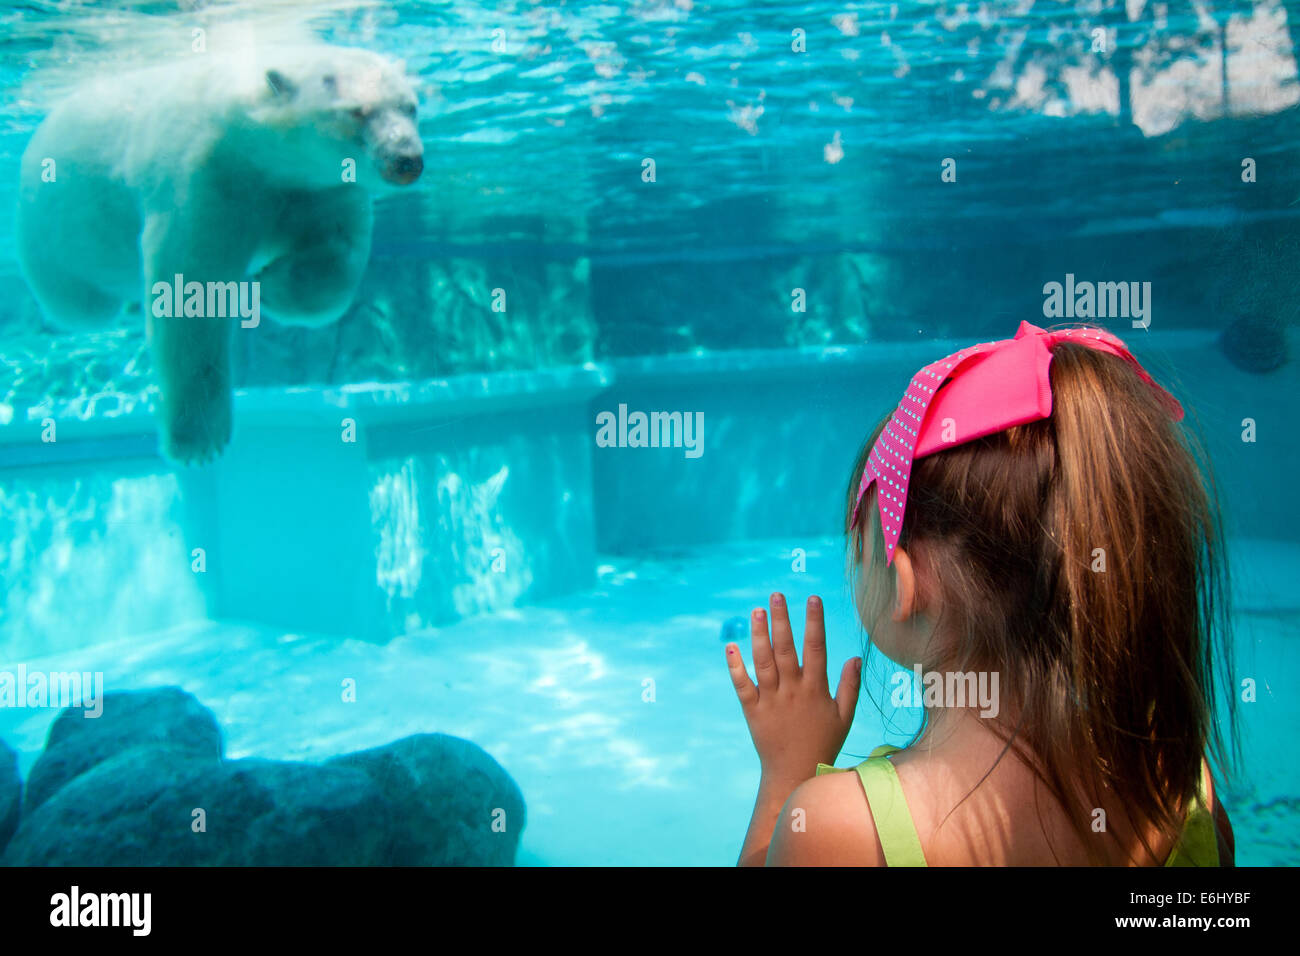 Una linda niña relojes anana, el oso polar residente de Lincoln Park Zoo de Chicago, bucee en los días calientes de verano. Foto de stock